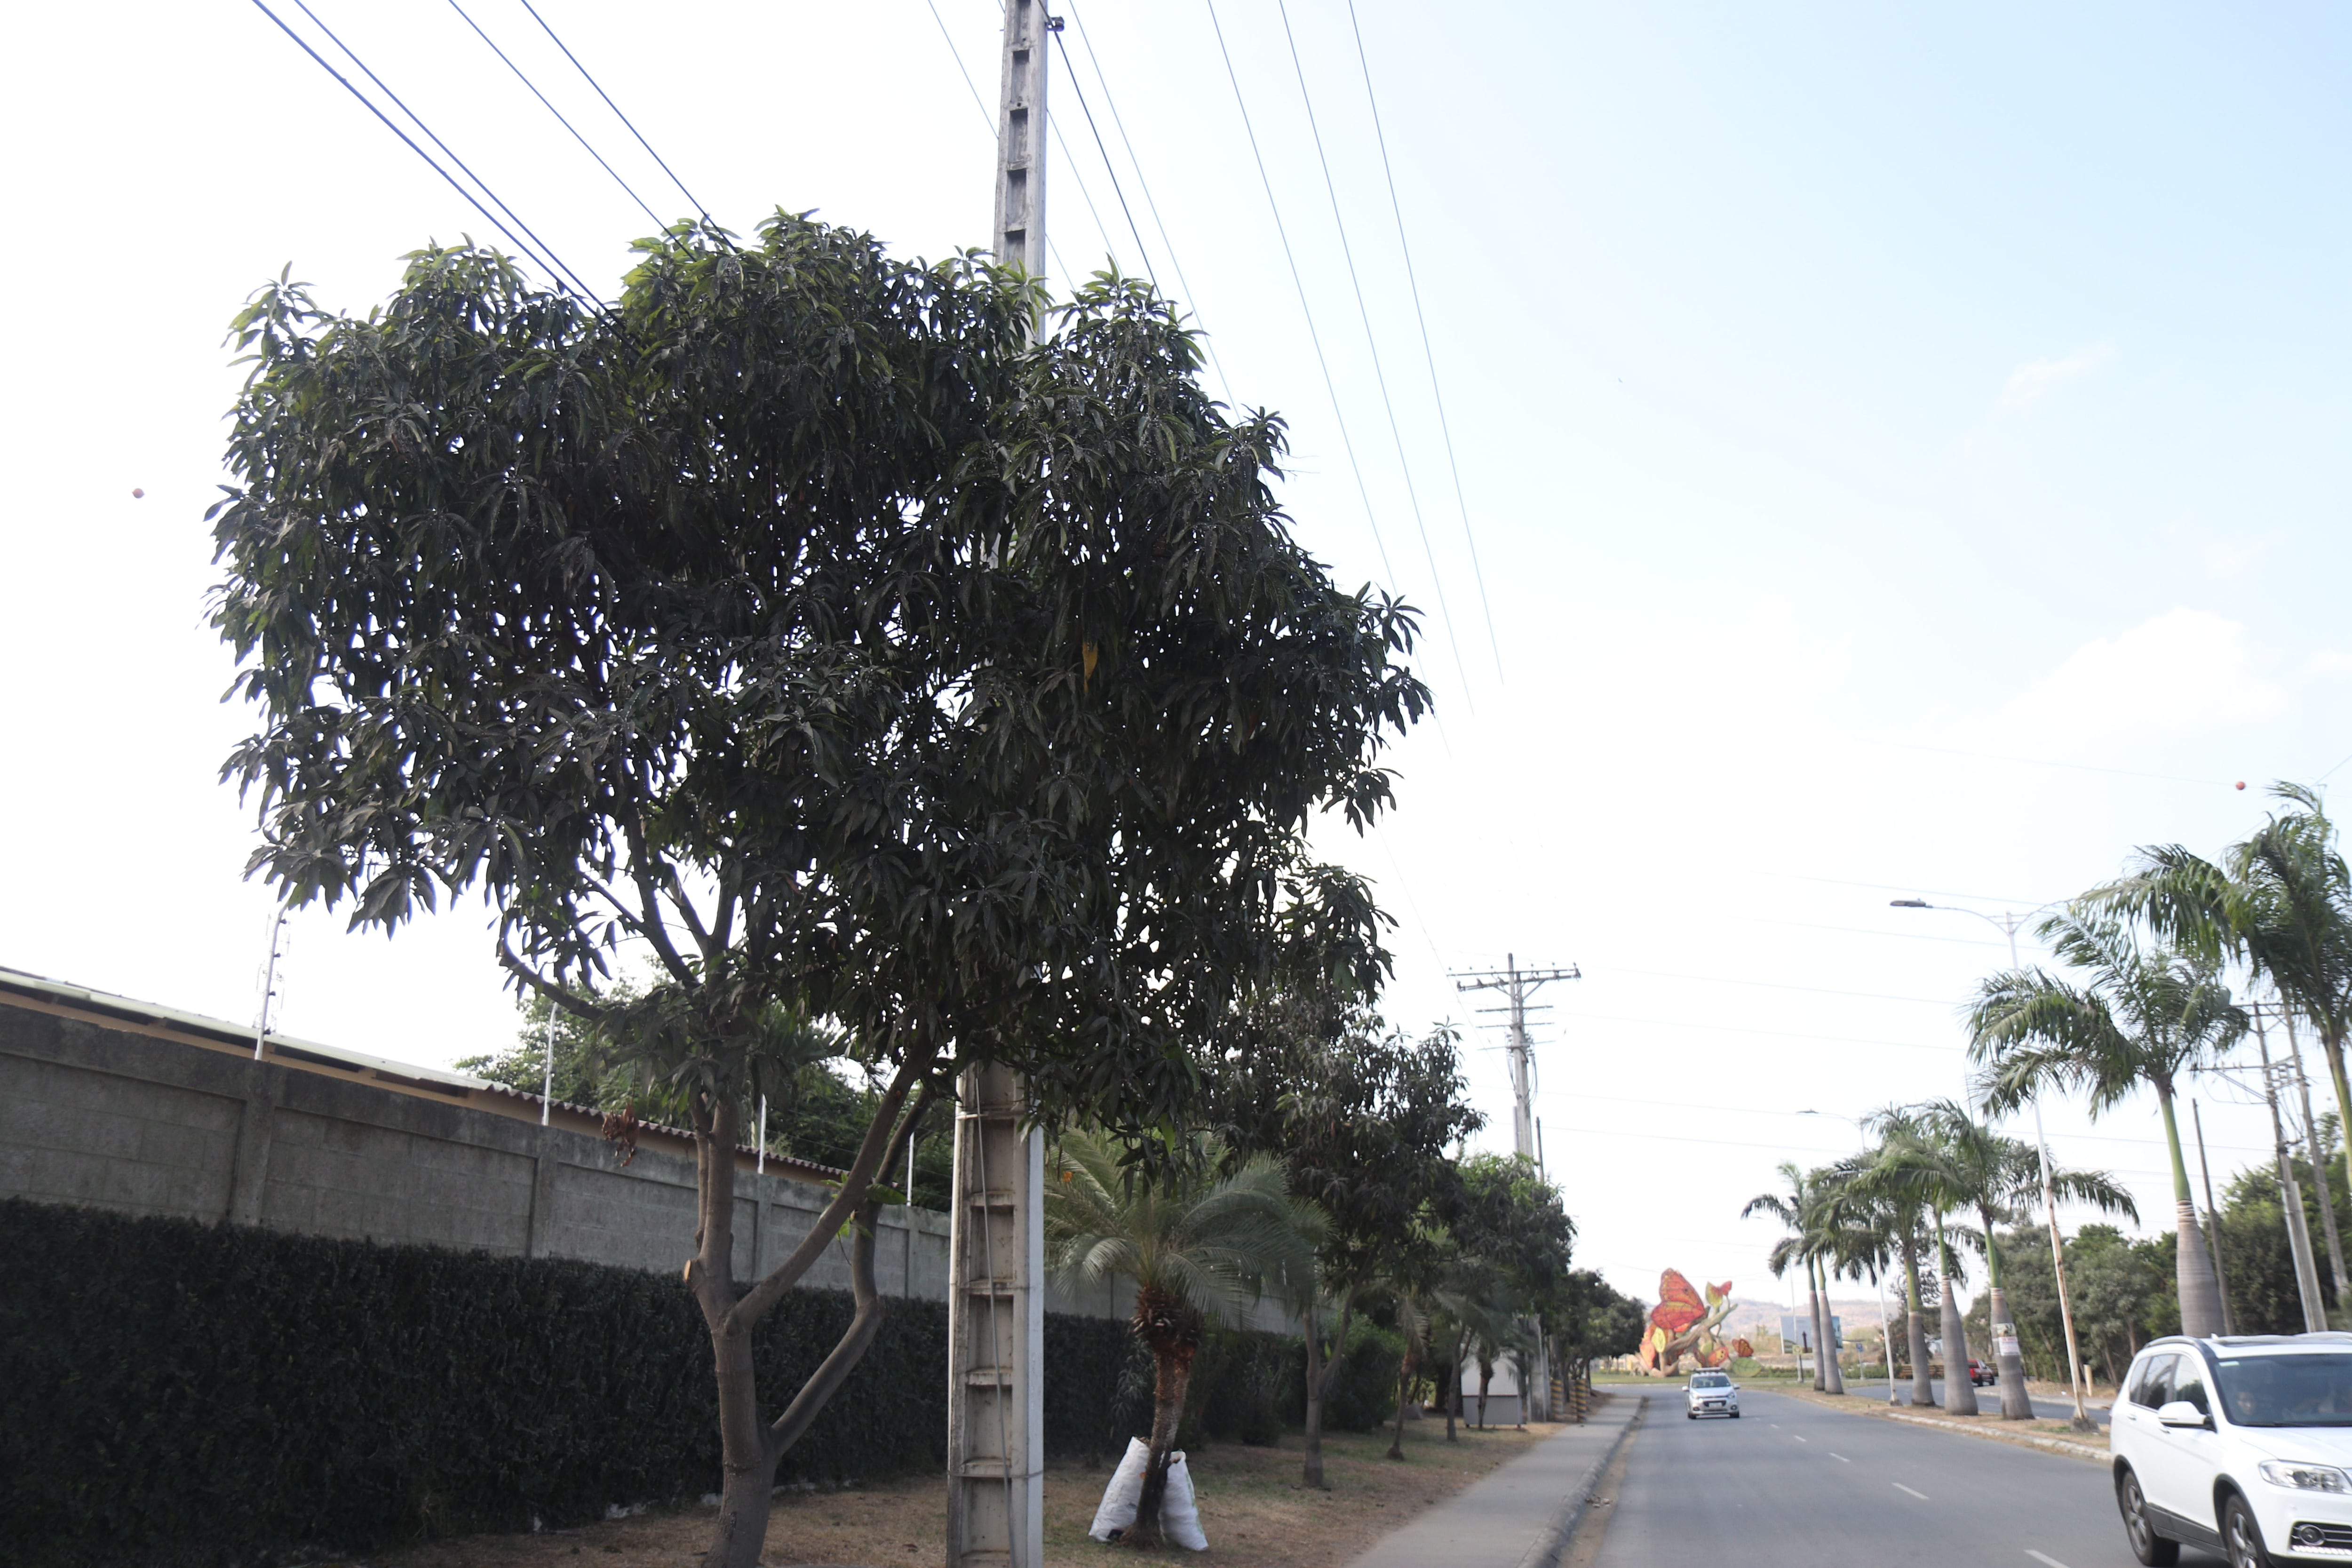 Plagas en árboles de Samborondón alarman a habitantes; en Daule se creó mesa técnica para analizar soluciones